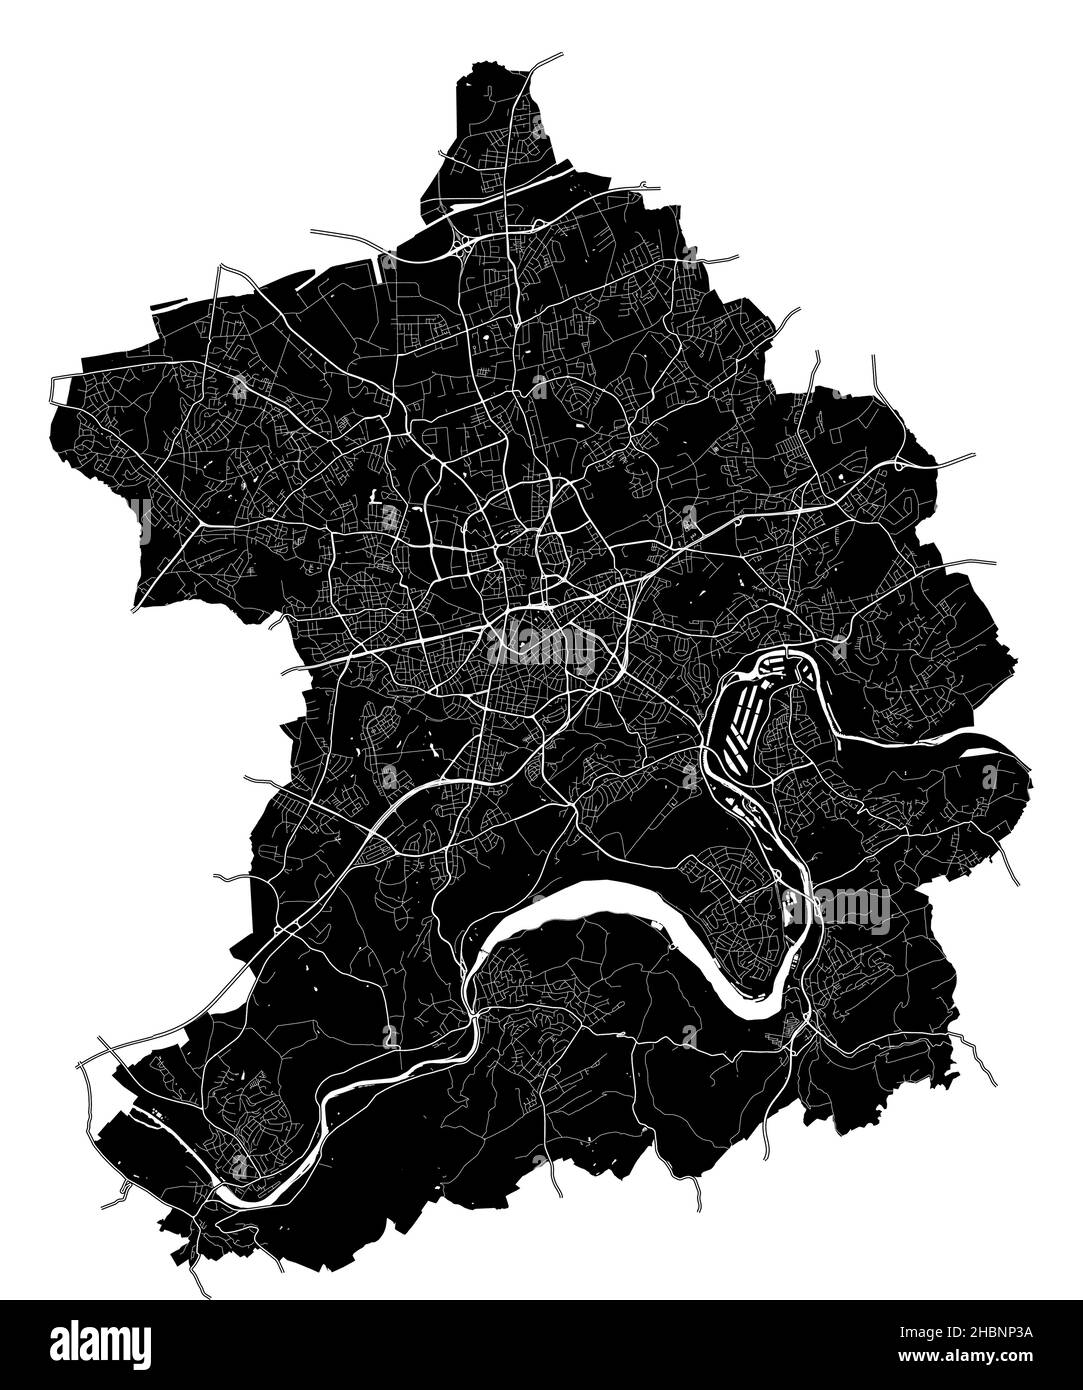 Essen, Renania del Norte-Westfalia, Alemania, mapa vectorial de alta resolución con límites de ciudad y caminos editables. El mapa de la ciudad fue dibujado con el lugar Ilustración del Vector